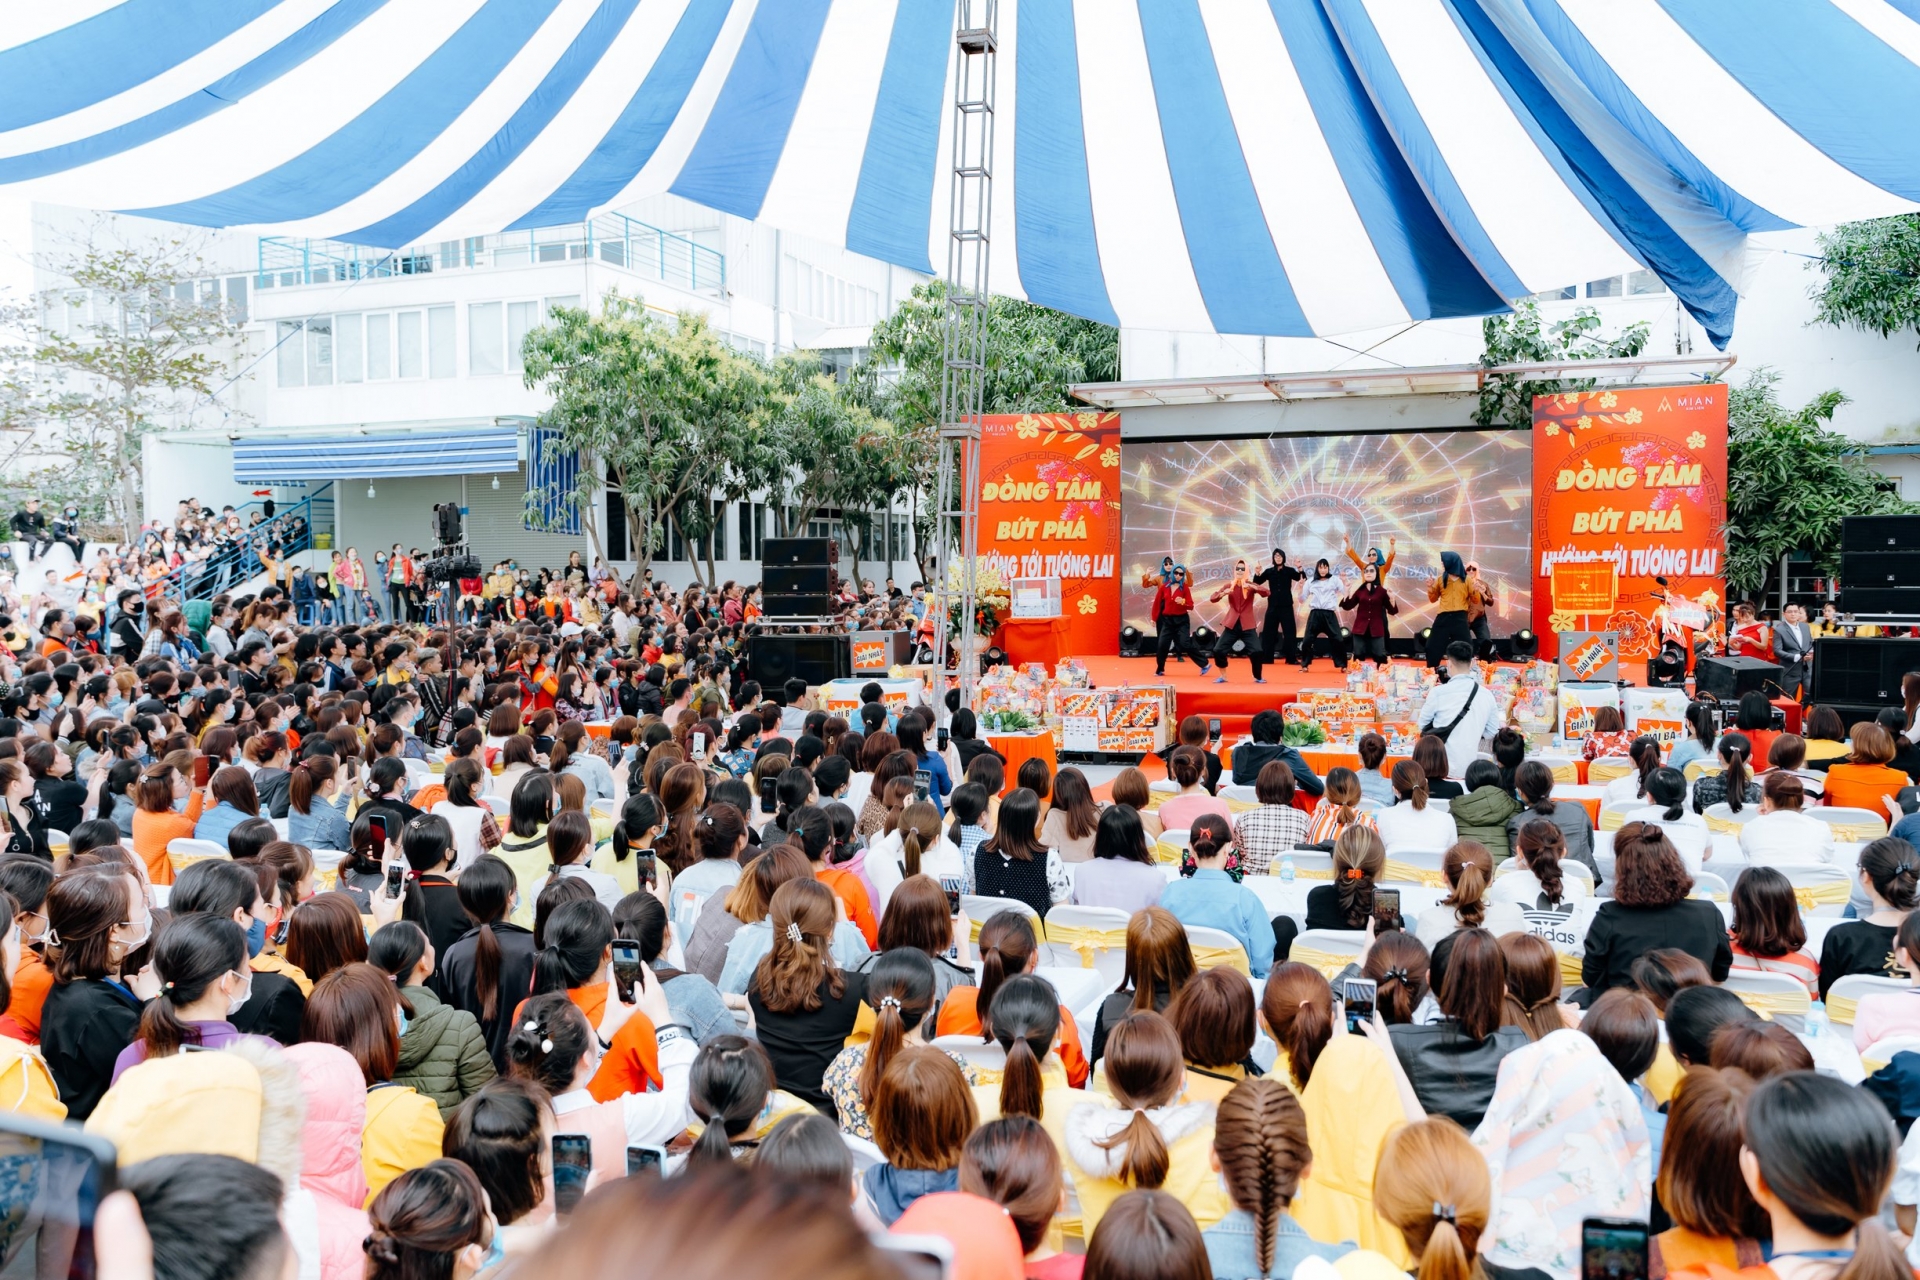 Công ty CP May Minh Anh – Kim Liên tổ chức Tết đoàn viên rực rỡ, đông vui, tự hào, lan tỏa